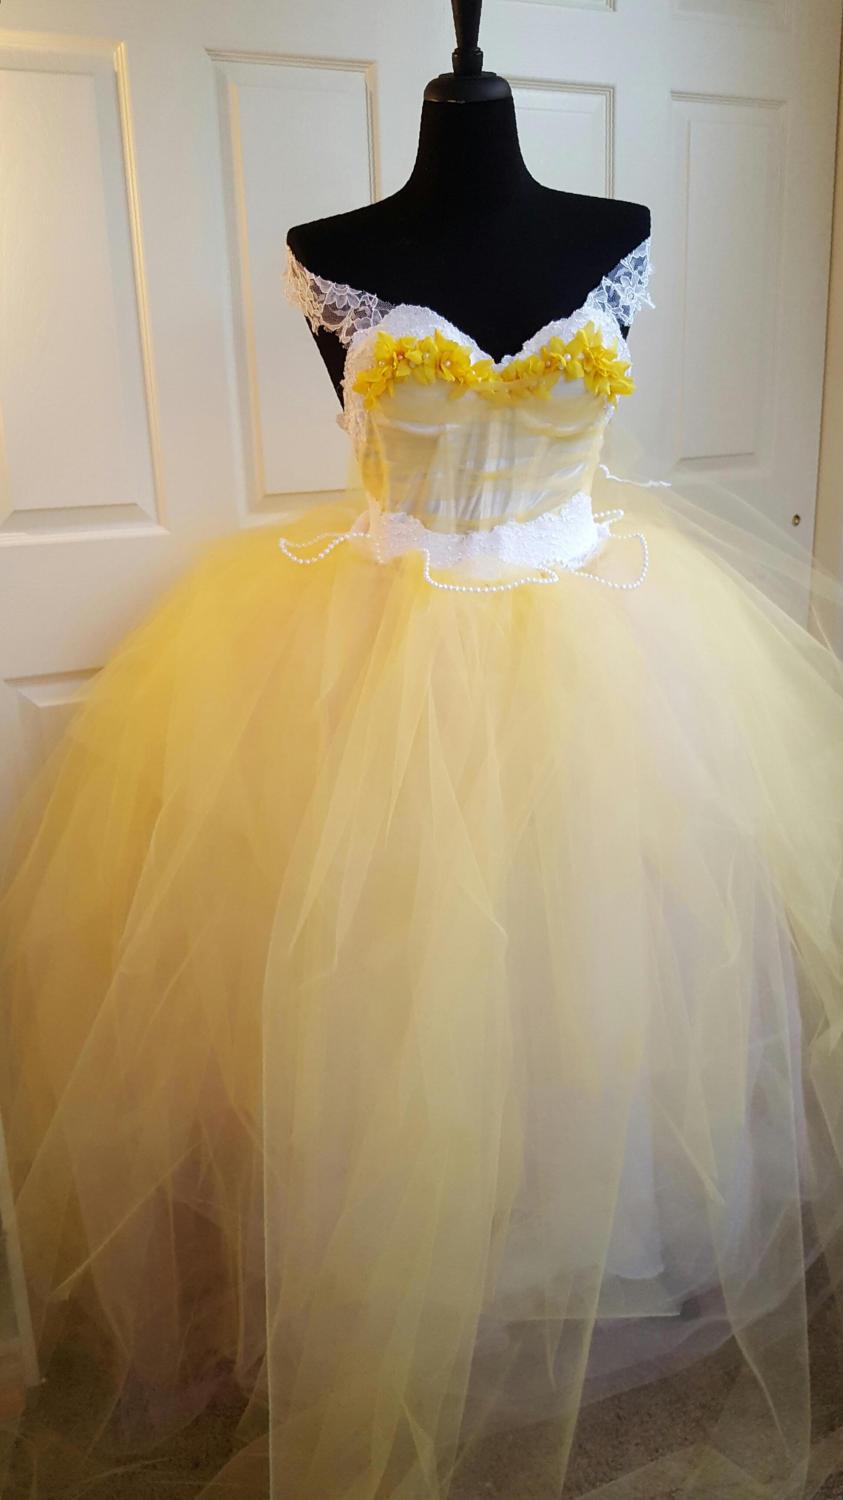 زفاف - Belle Beauty and the Beast Style Yellow White Fairytale Princess Corset w/Straps Lace Tulle Wedding Bridal Ballgown Costume Quinceanera Prom